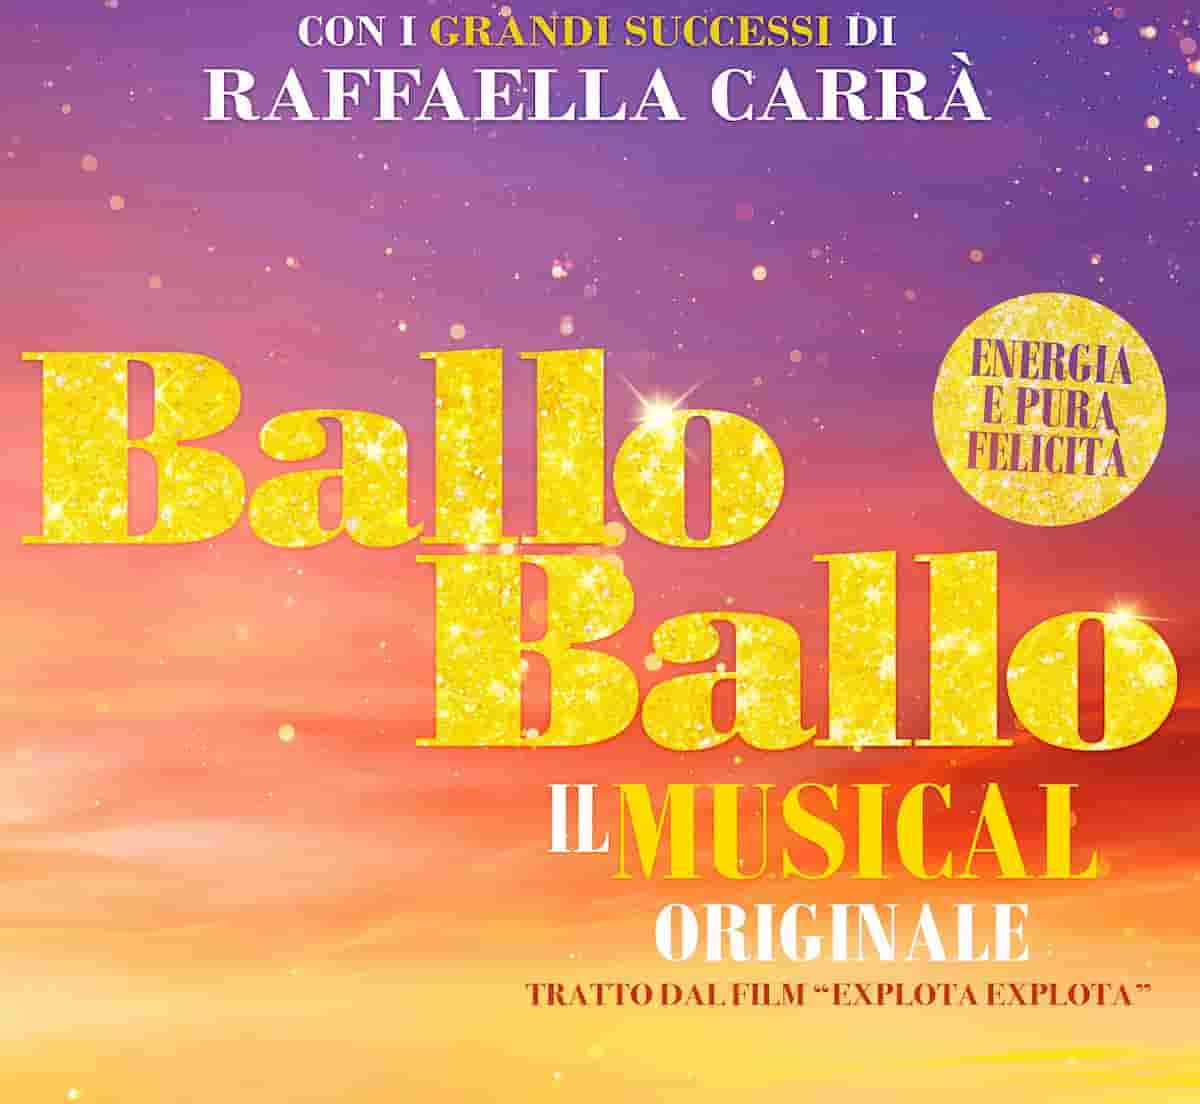 musical Raffaella Carrà